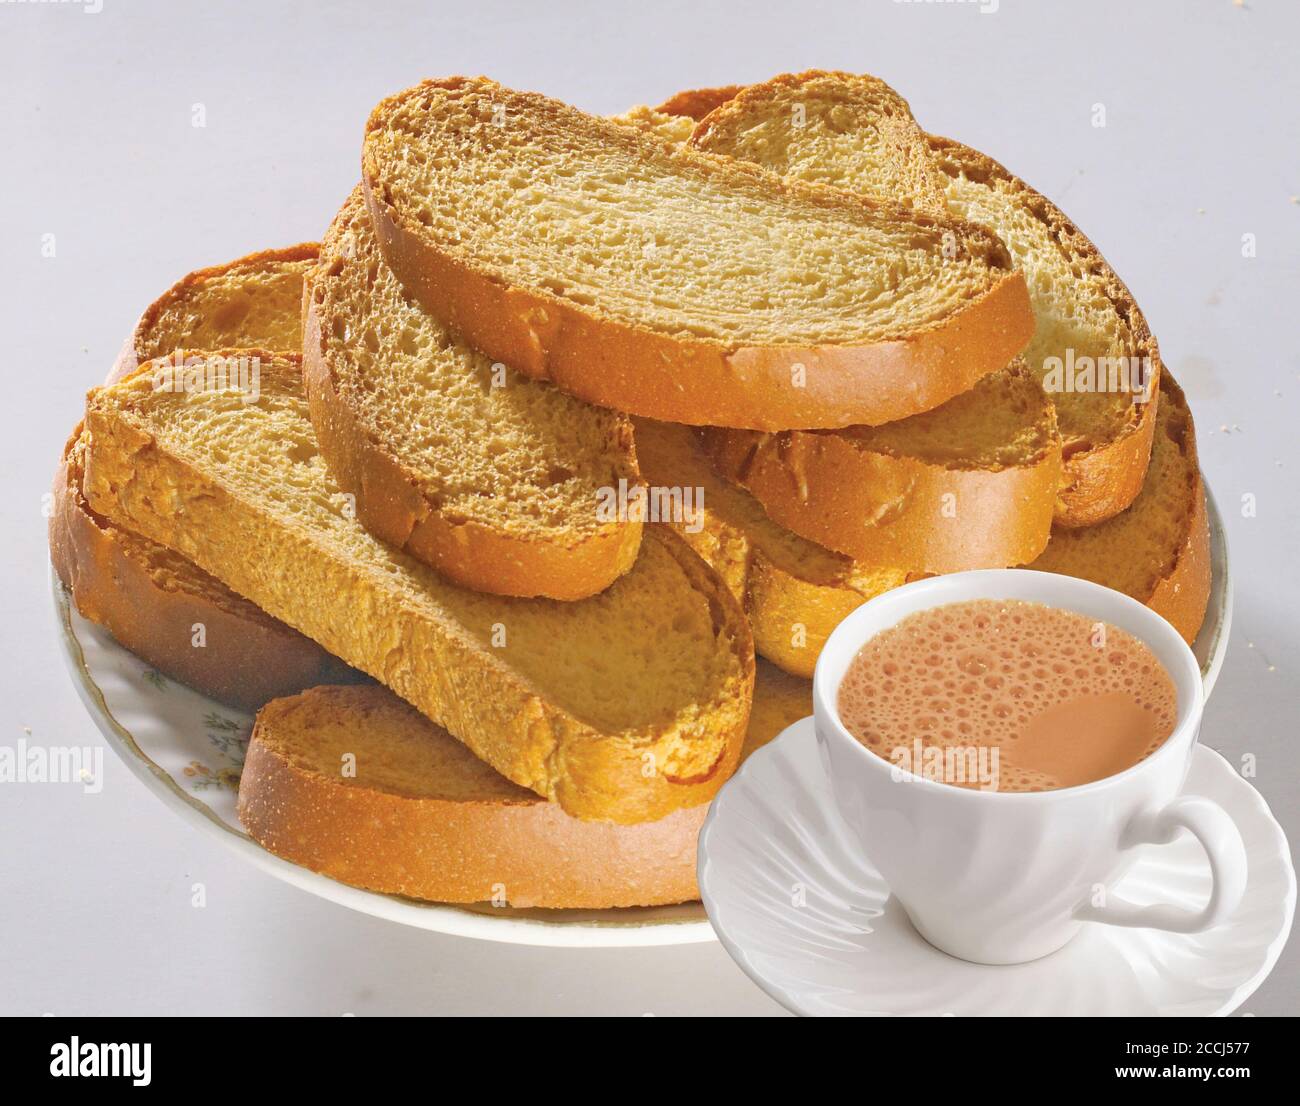 Knuspriger Rusk oder Toast für ein gesundes Leben, traditionelle Keksschale  mit Tee, Toast zum Frühstück und Tasse frische Milch & Tee, trockenes  Toastbrot Stockfotografie - Alamy